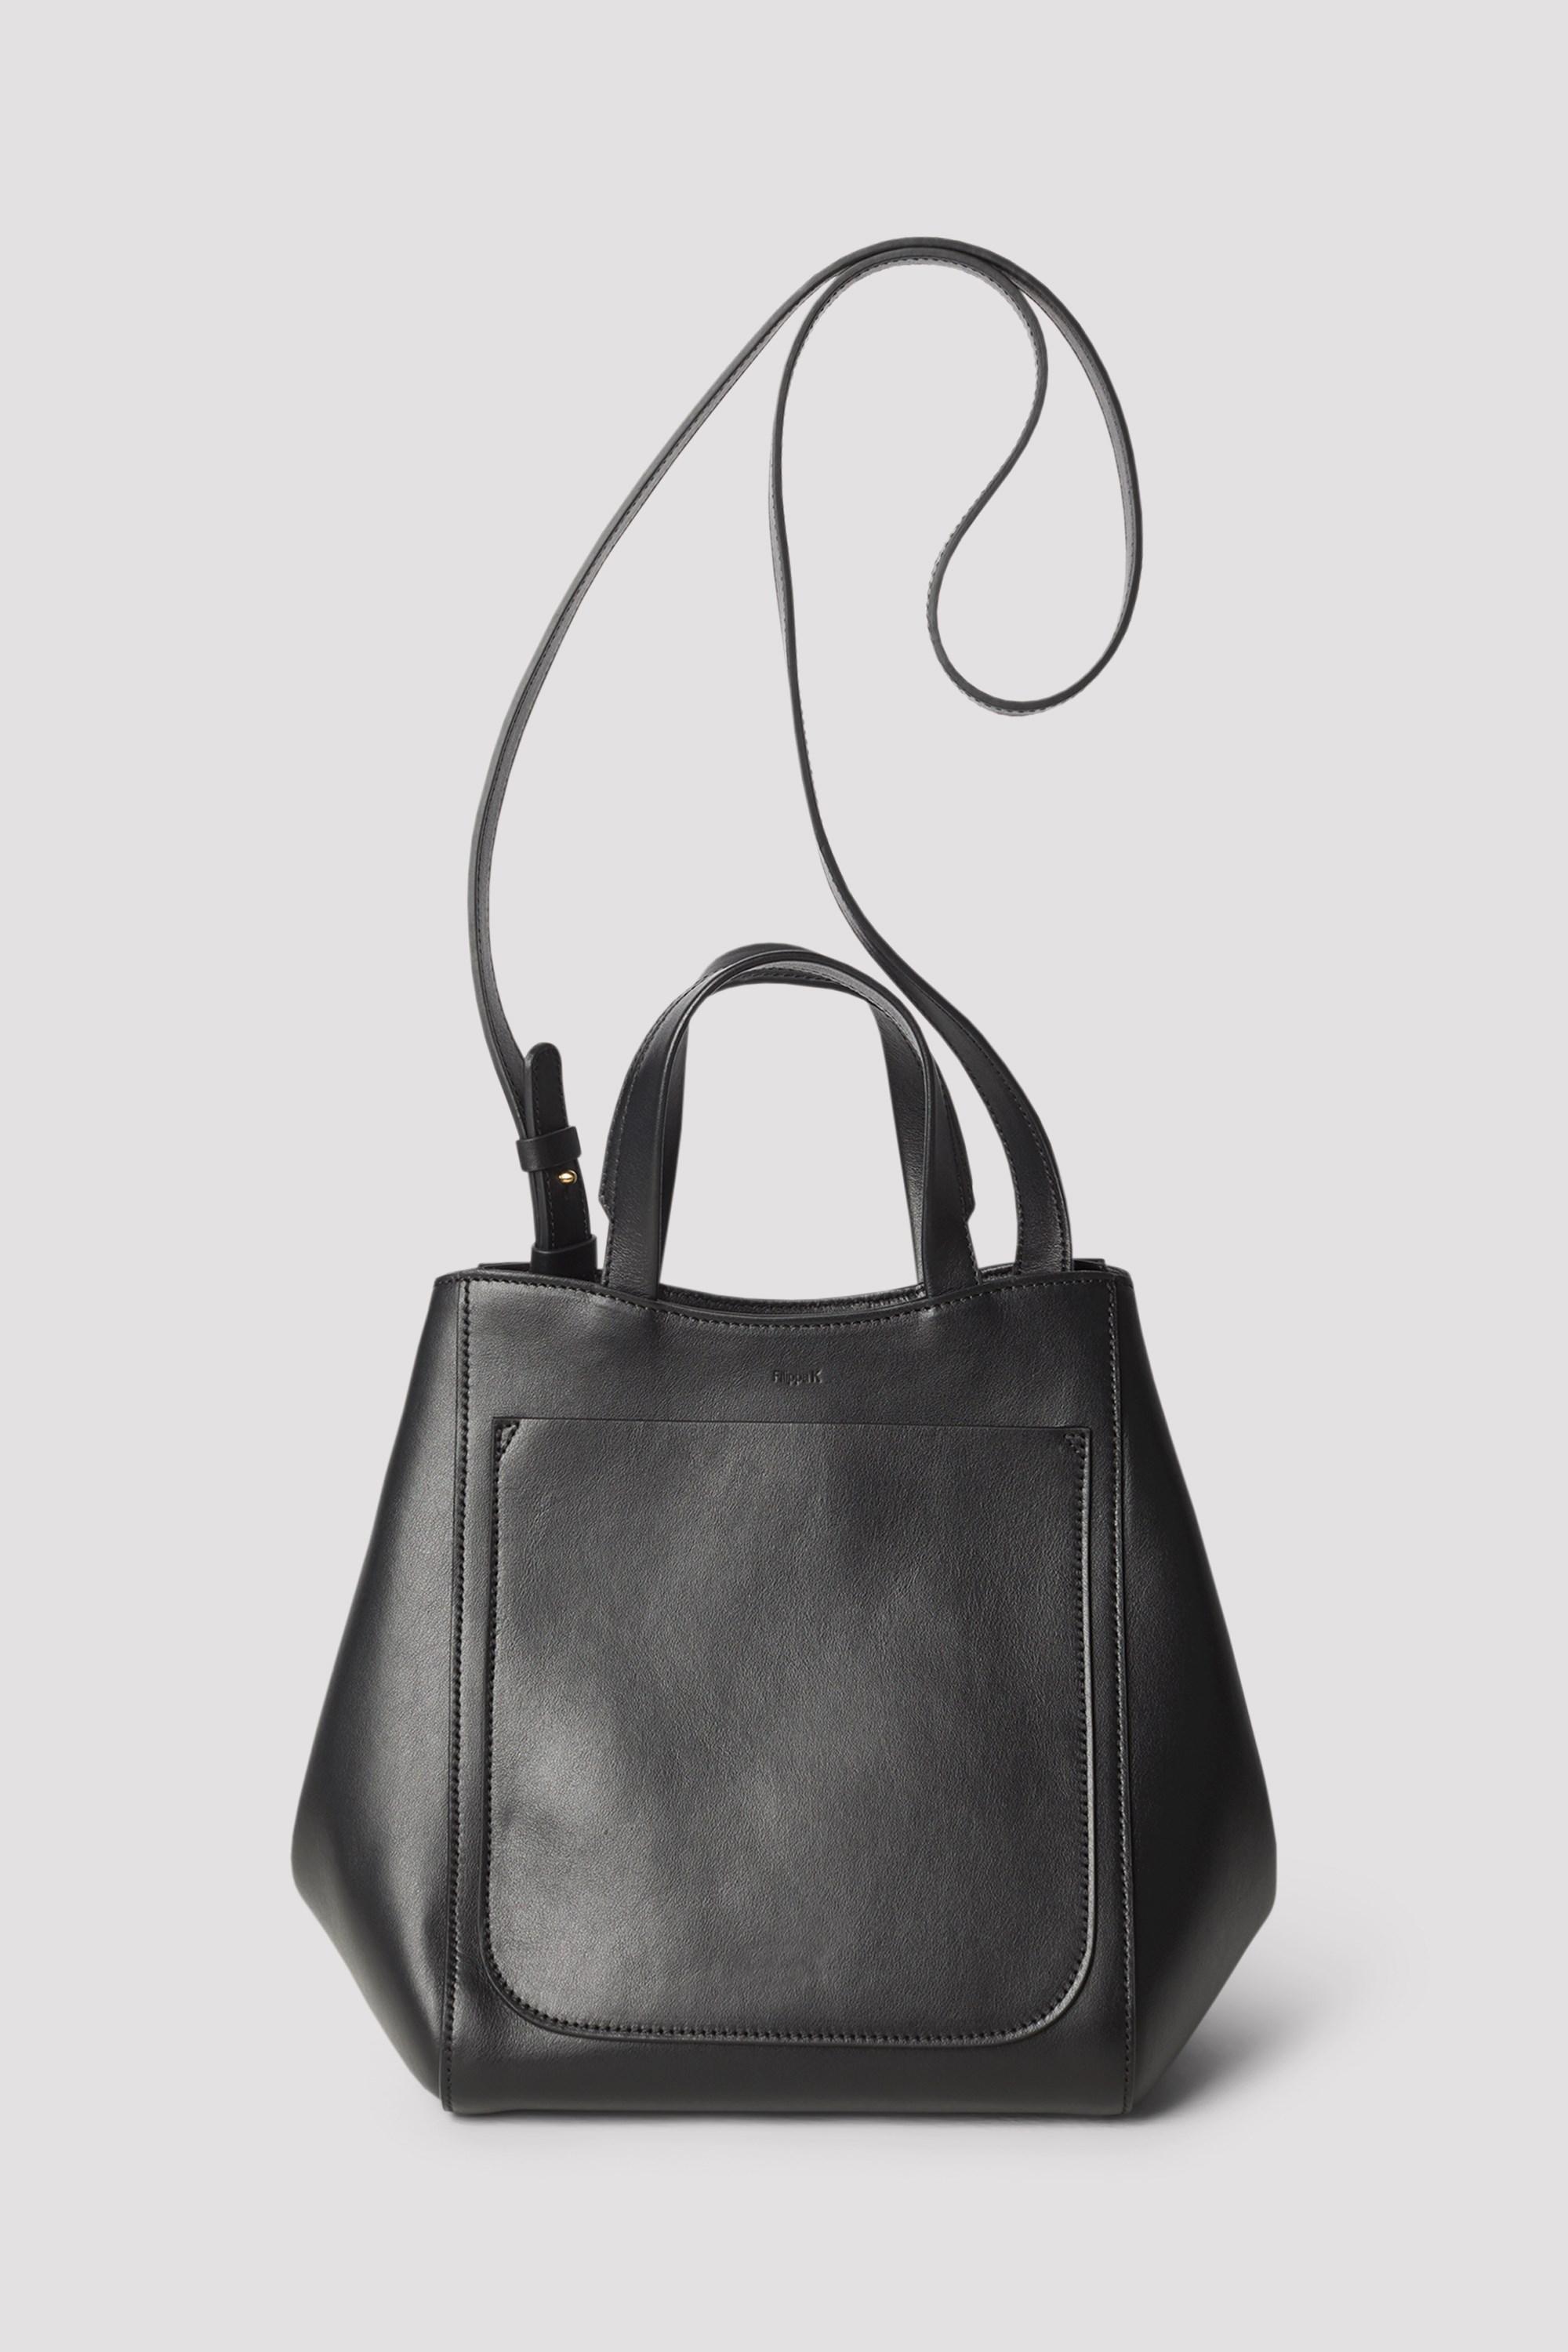 Filippa K Shelby Mini Bucket Leather Bag in Black - Lyst